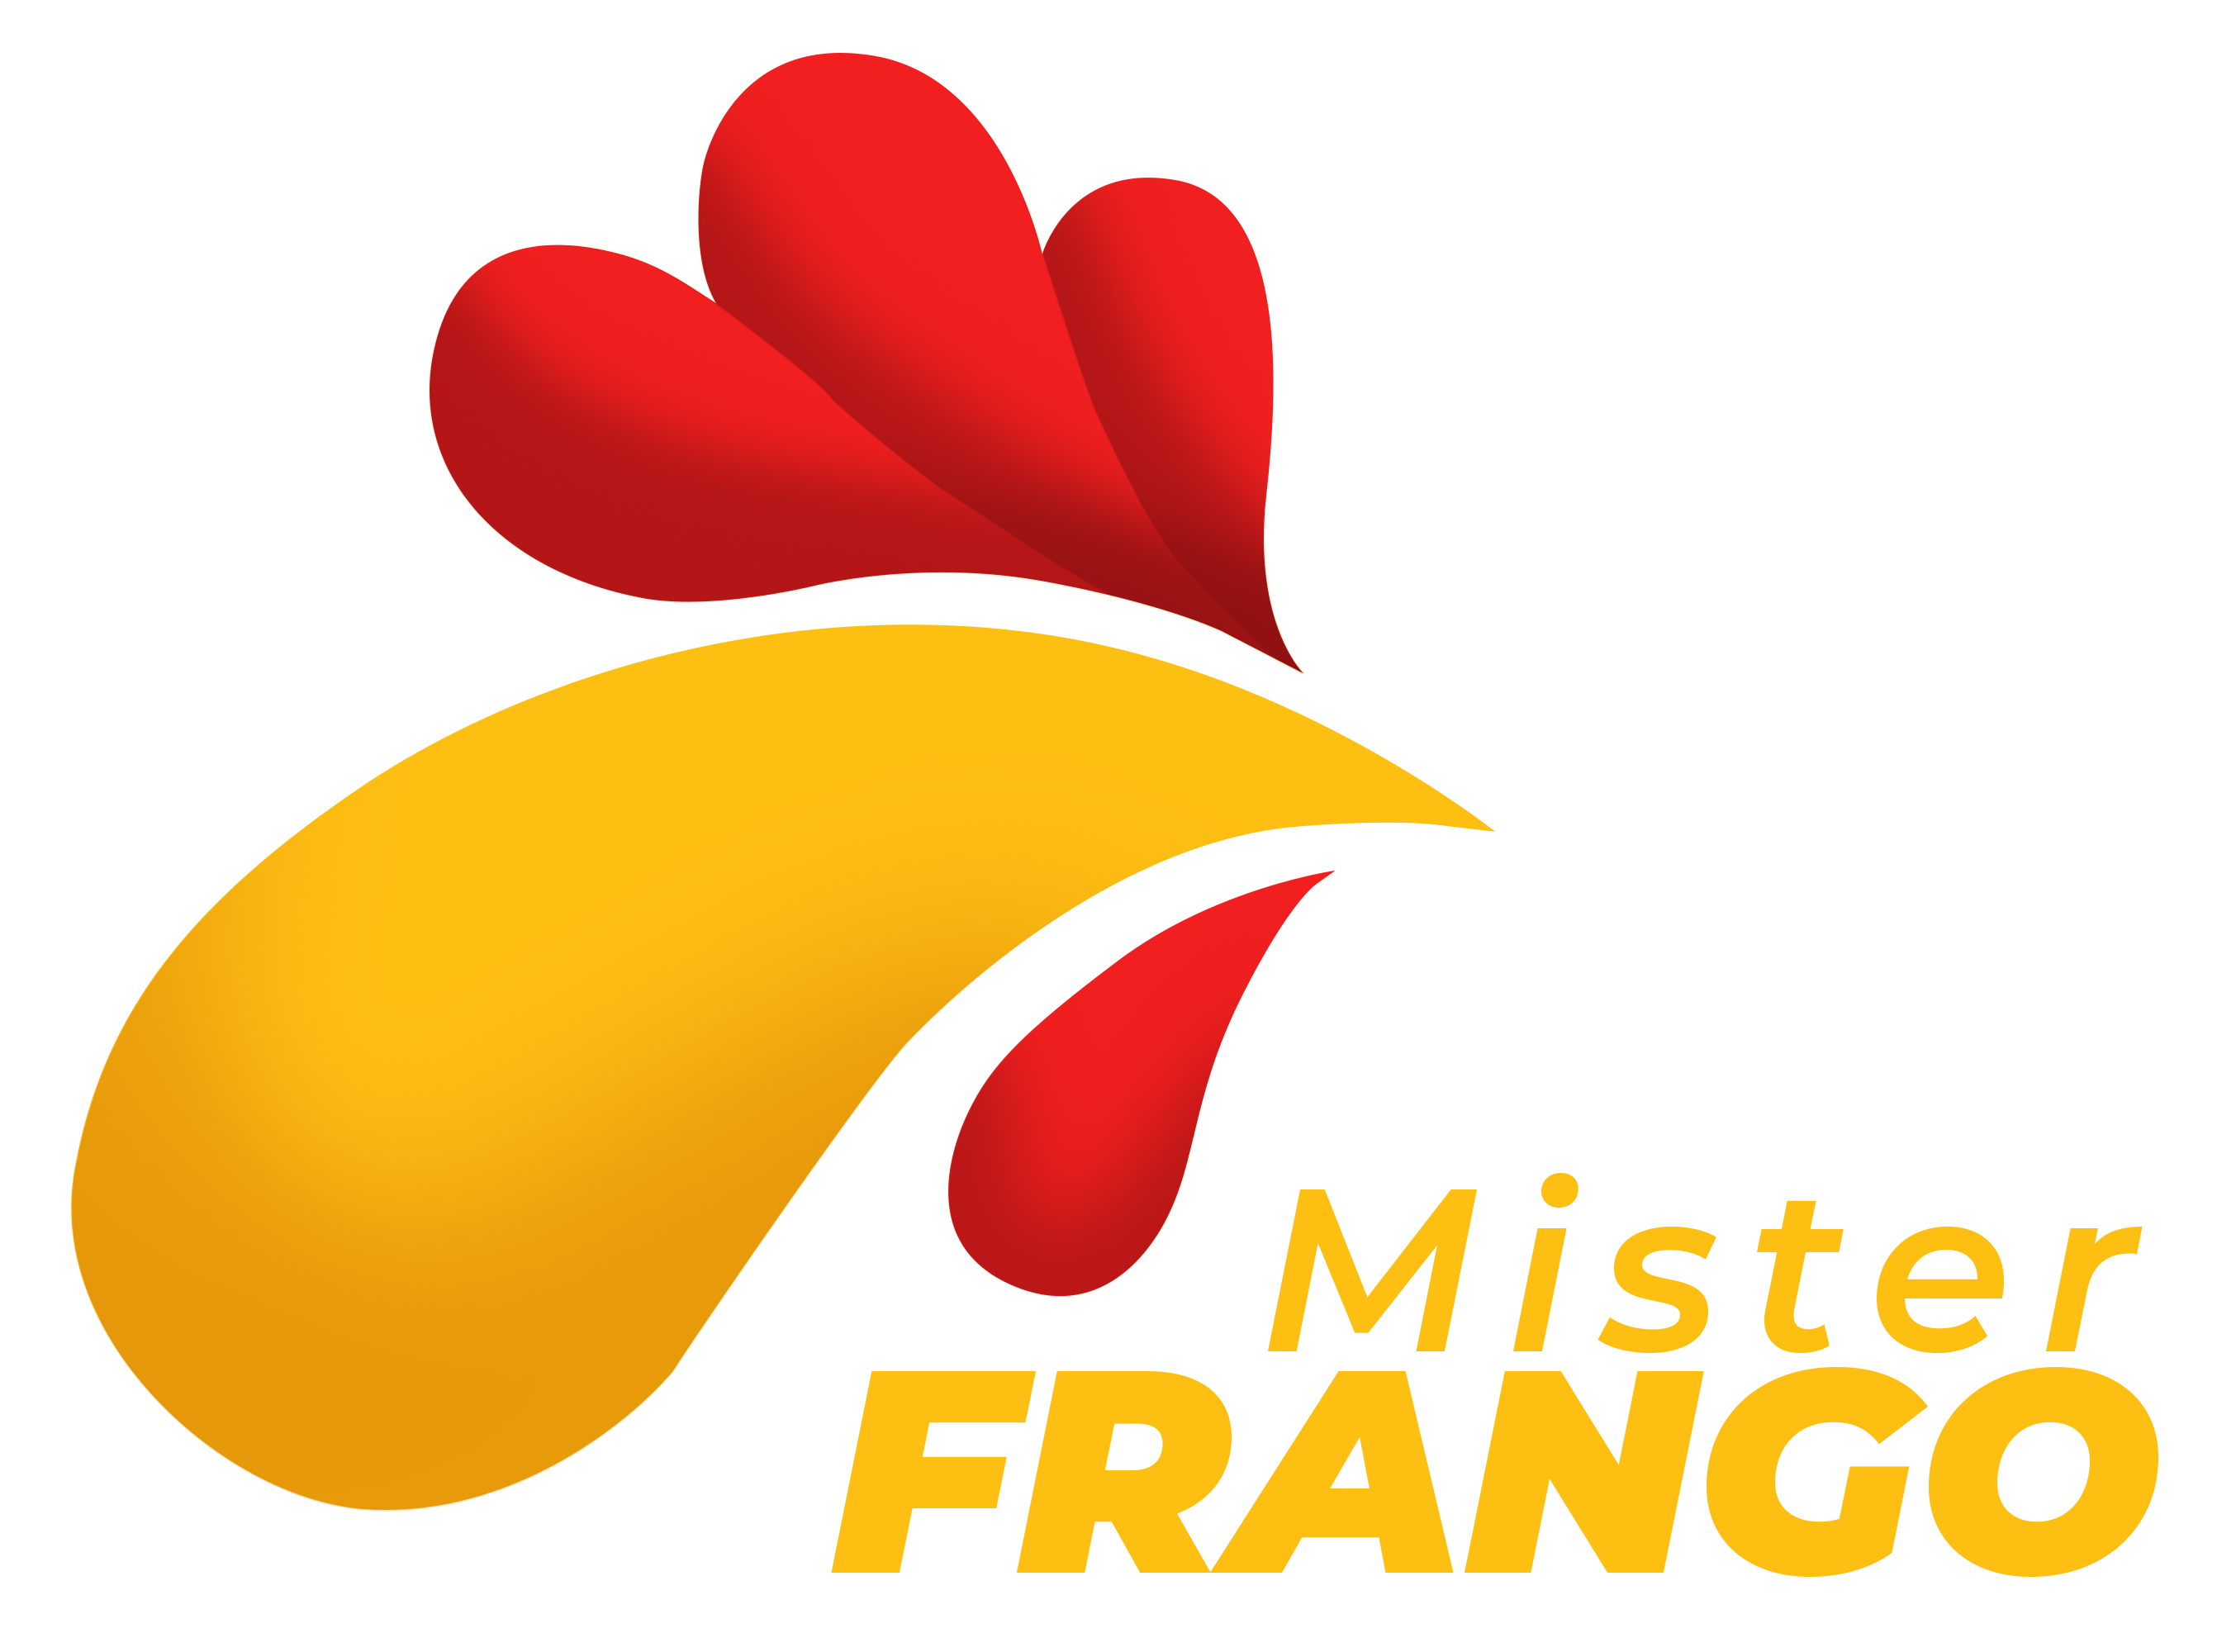 Mister Frango